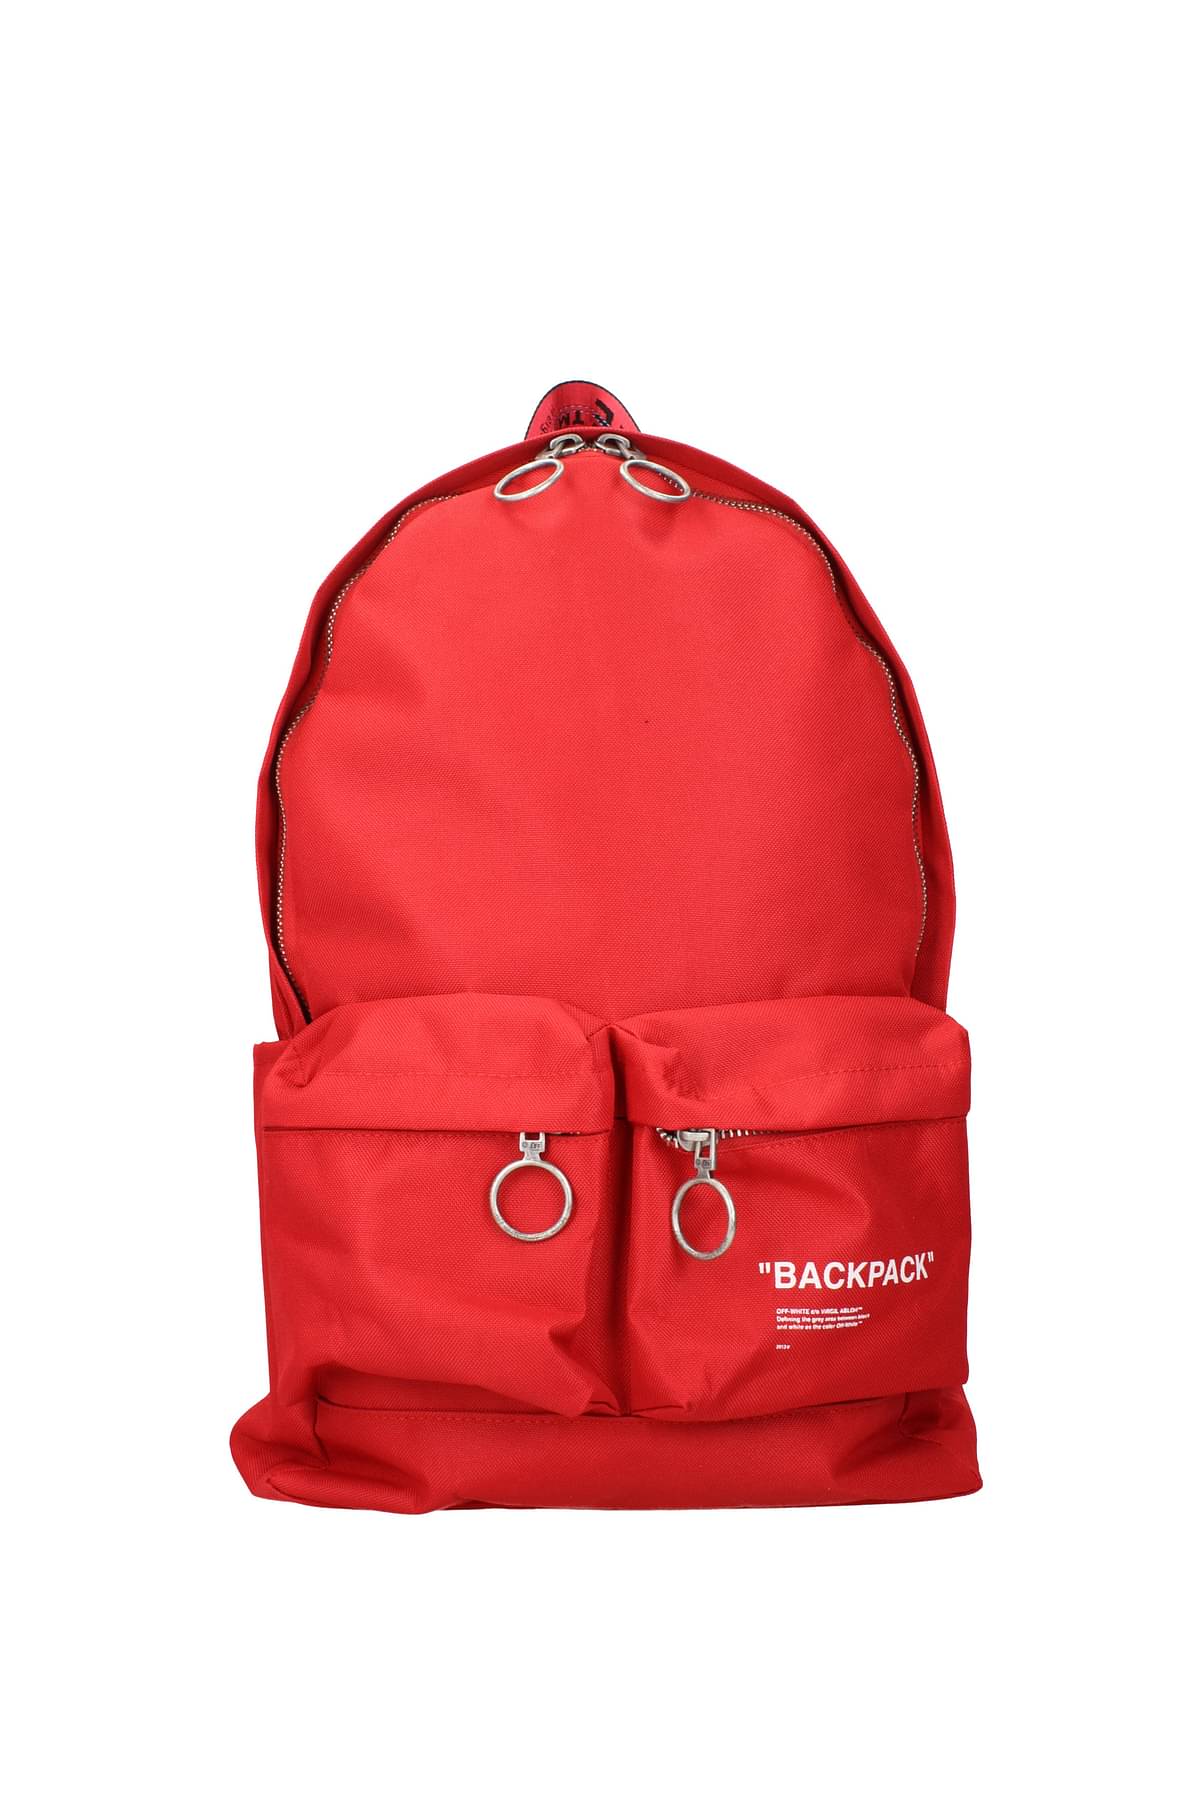 Erobrer Ledelse oprejst Off-White Backpack and bumbags Men OMNB003F180740152001 Fabric Red Red 231€